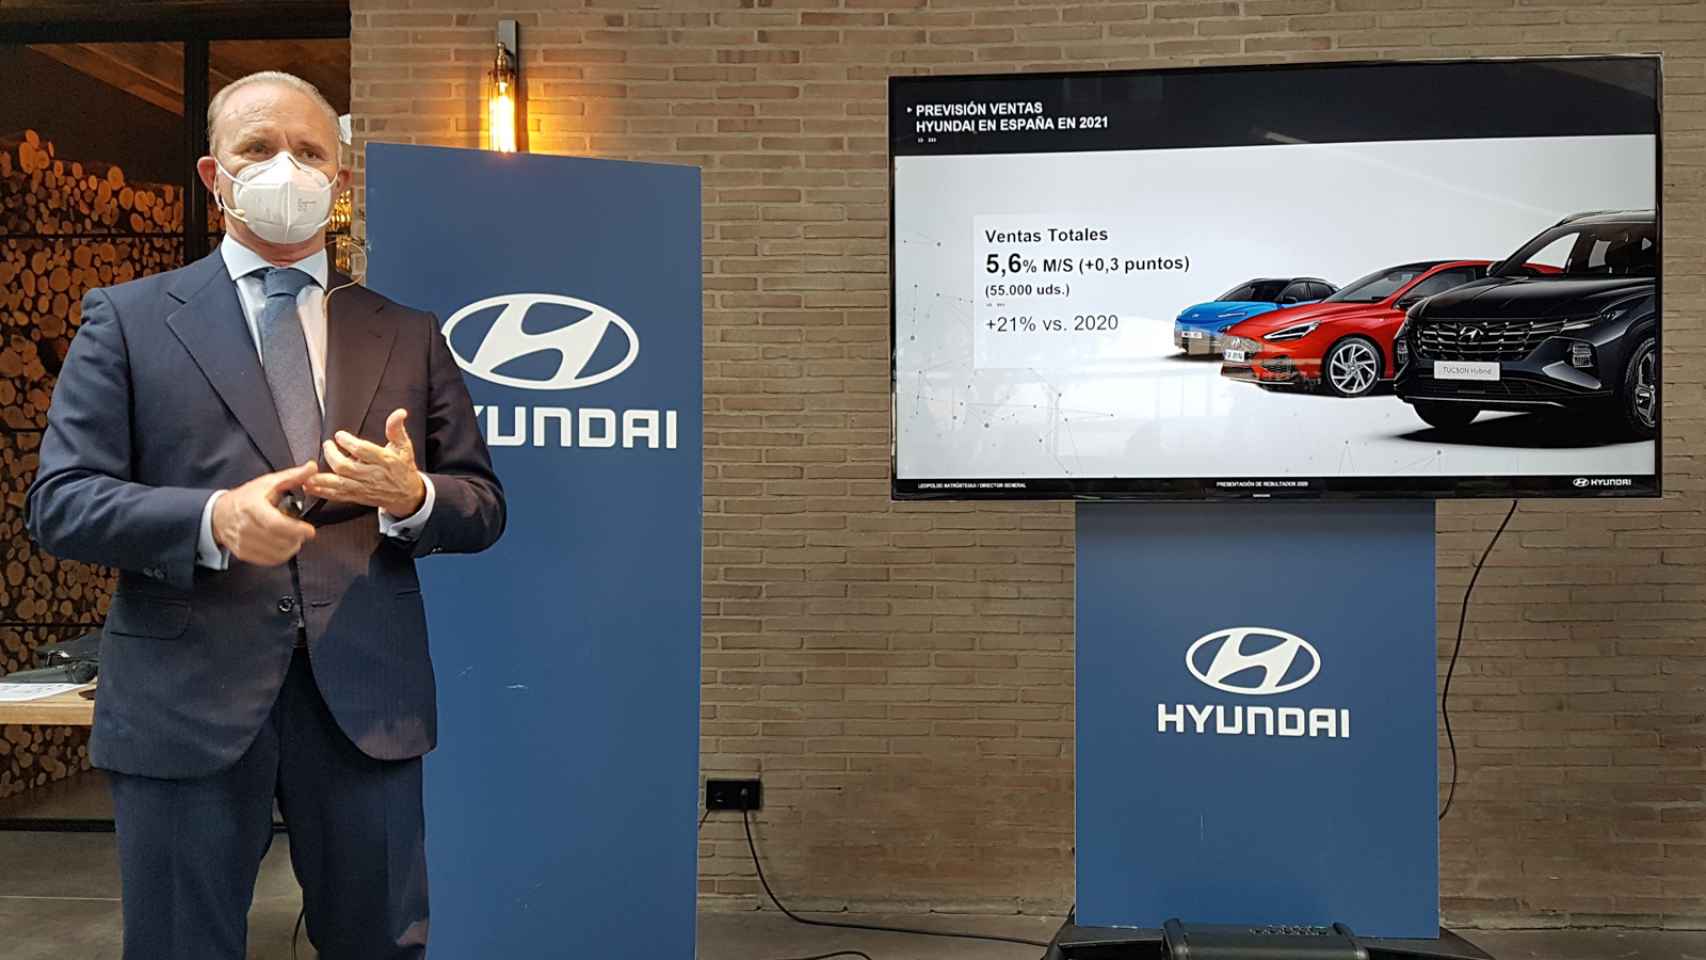 Leopoldo Satrústegui, director general de Hyundai, en la presentación.